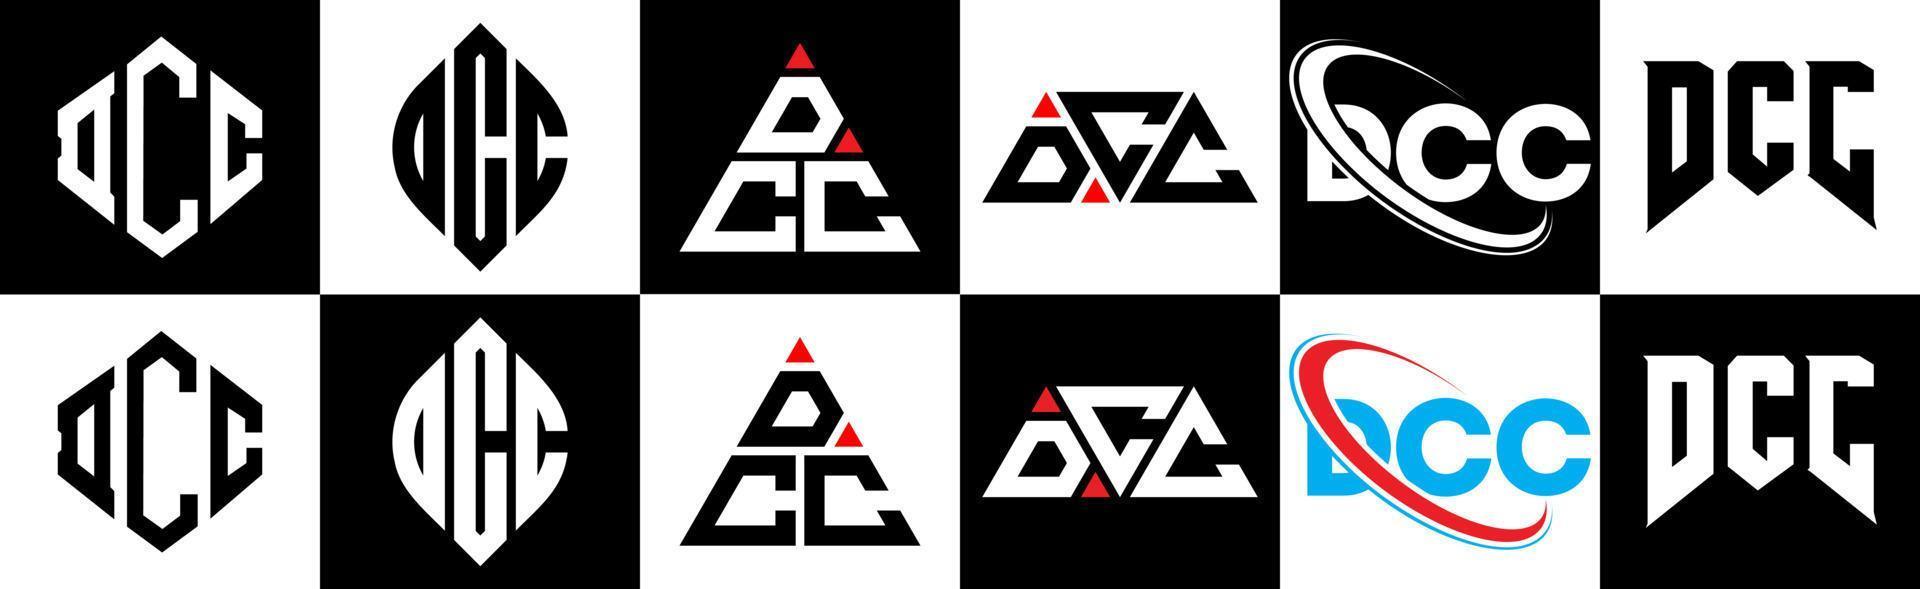 design de logotipo de carta dcc em estilo seis. polígono dcc, círculo, triângulo, hexágono, estilo plano e simples com logotipo de carta de variação de cor preto e branco definido em uma prancheta. dcc logotipo minimalista e clássico vetor